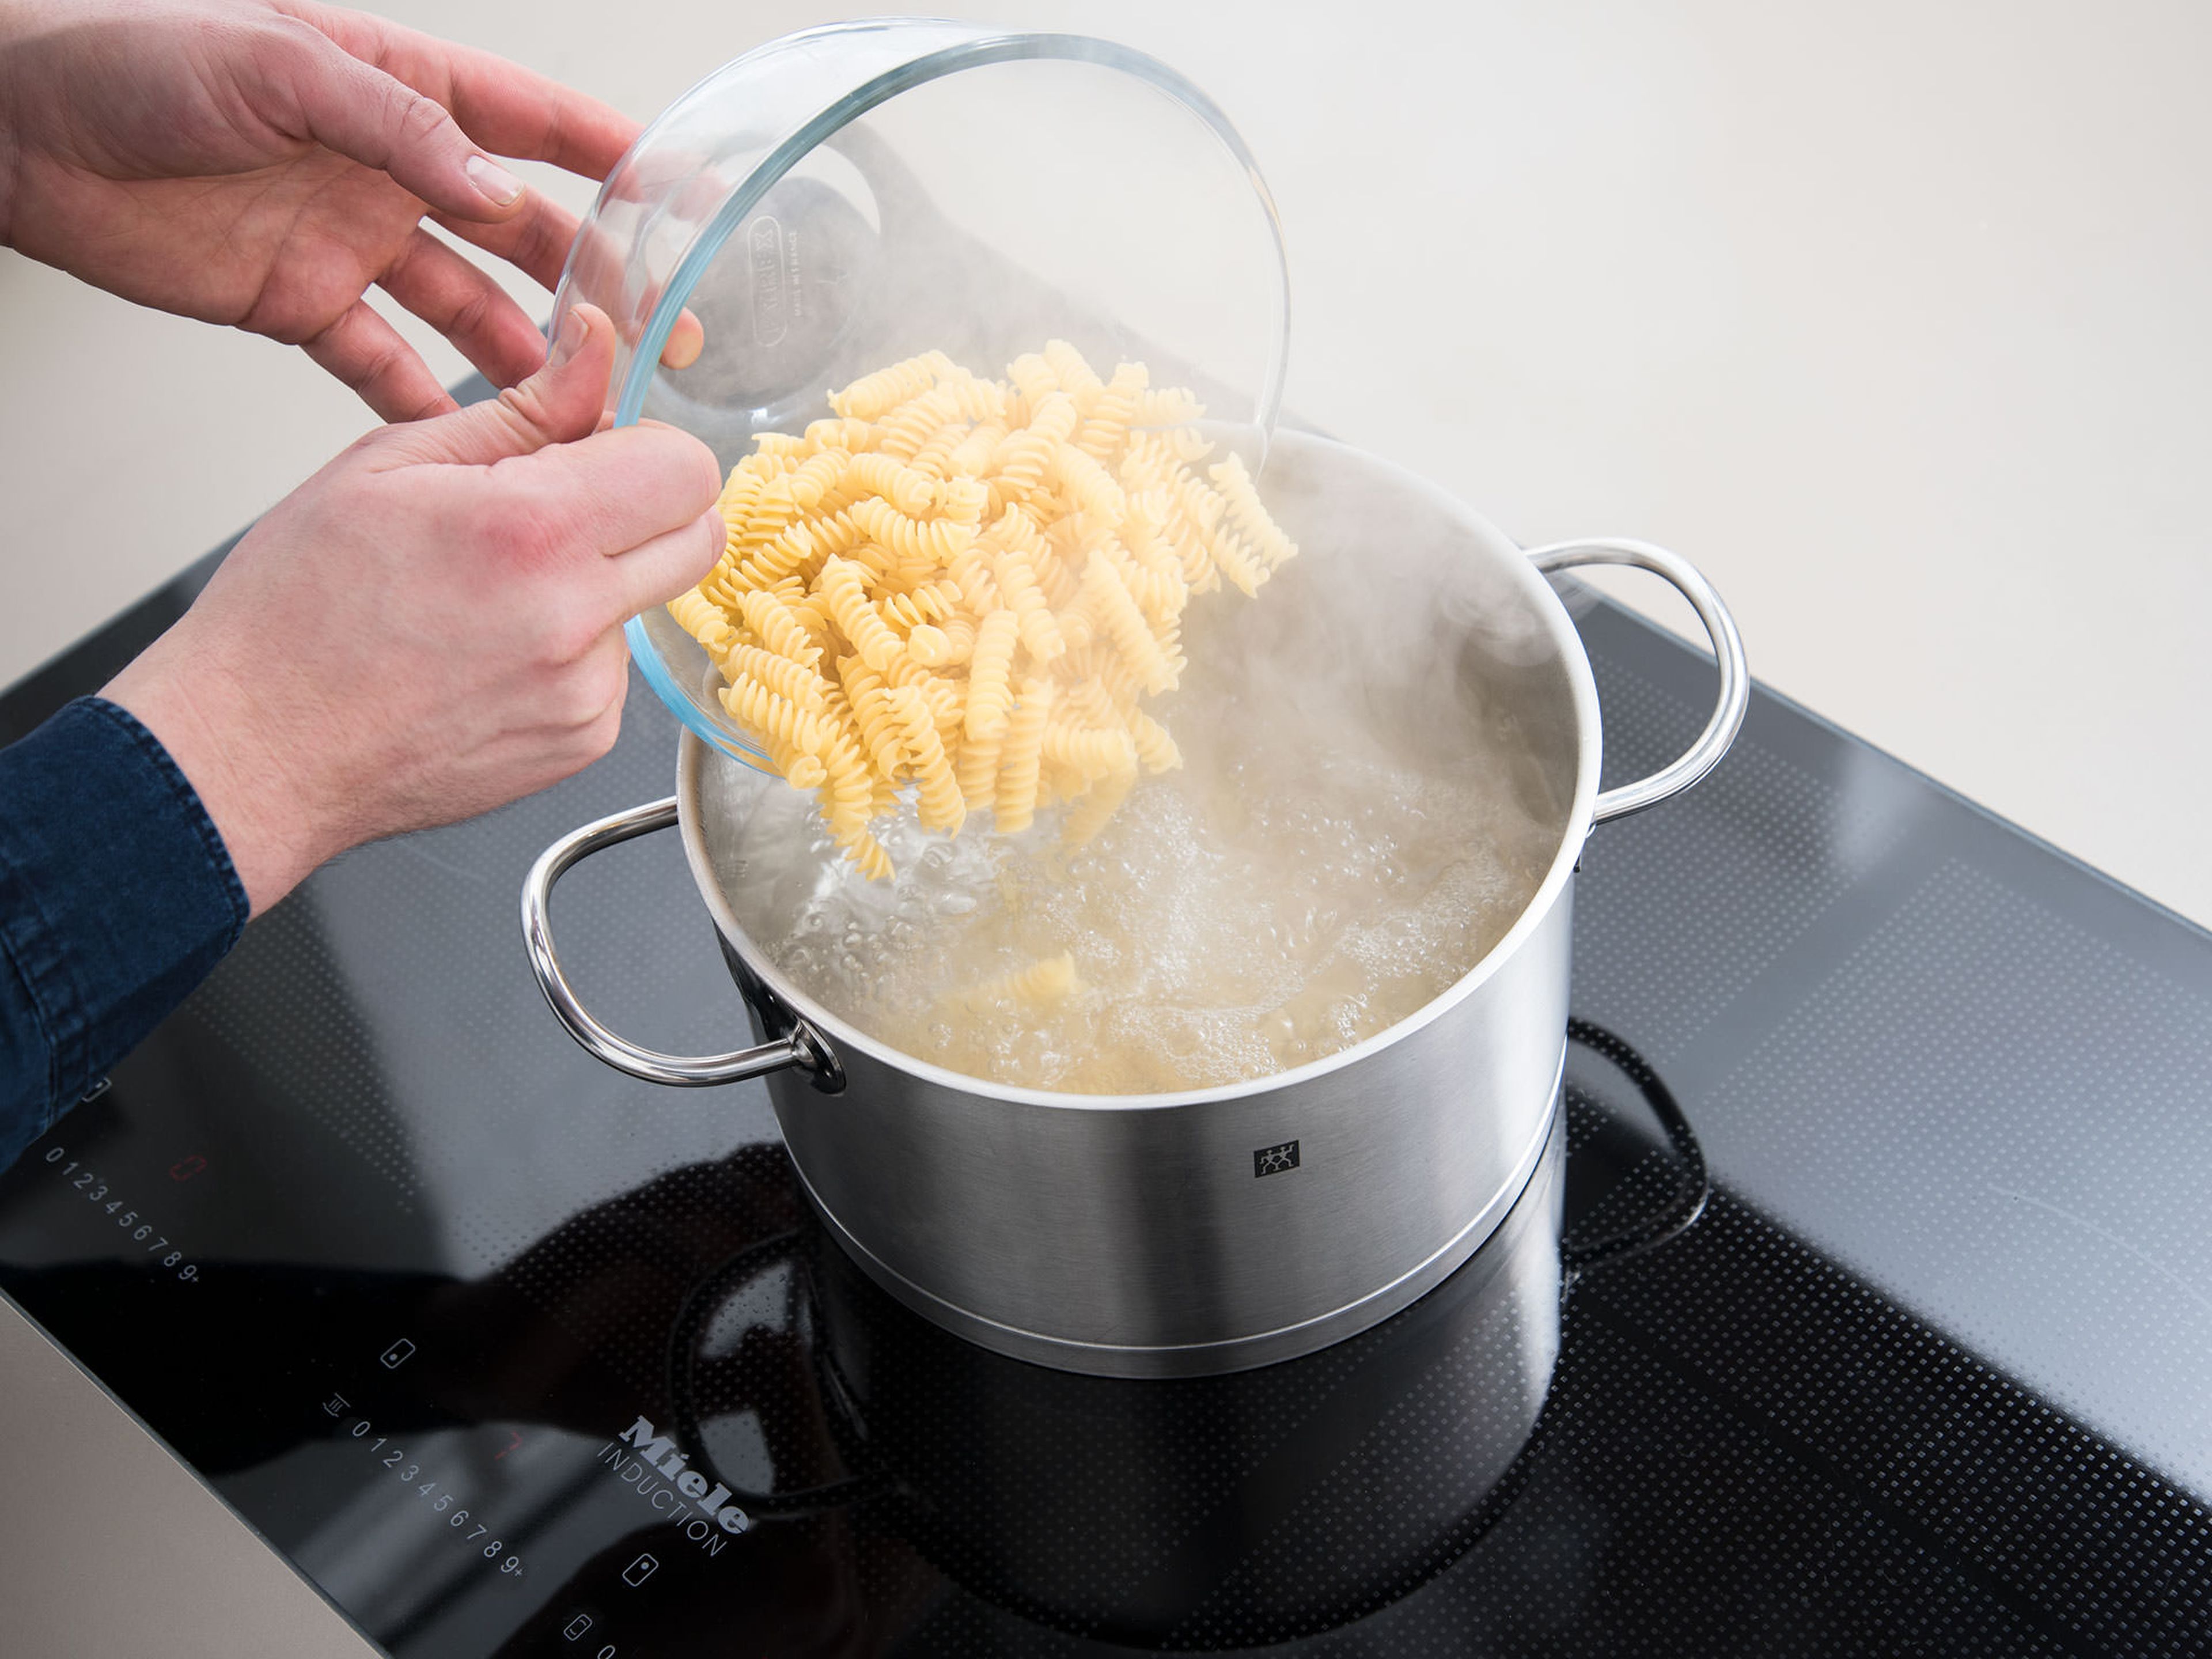 Wasser in einem Topf zum Kochen bringen, salzen und Nudeln nach Packungsanleitung al dente kochen. In der Zwischenzeit den Backofen auf 200°C vorheizen.